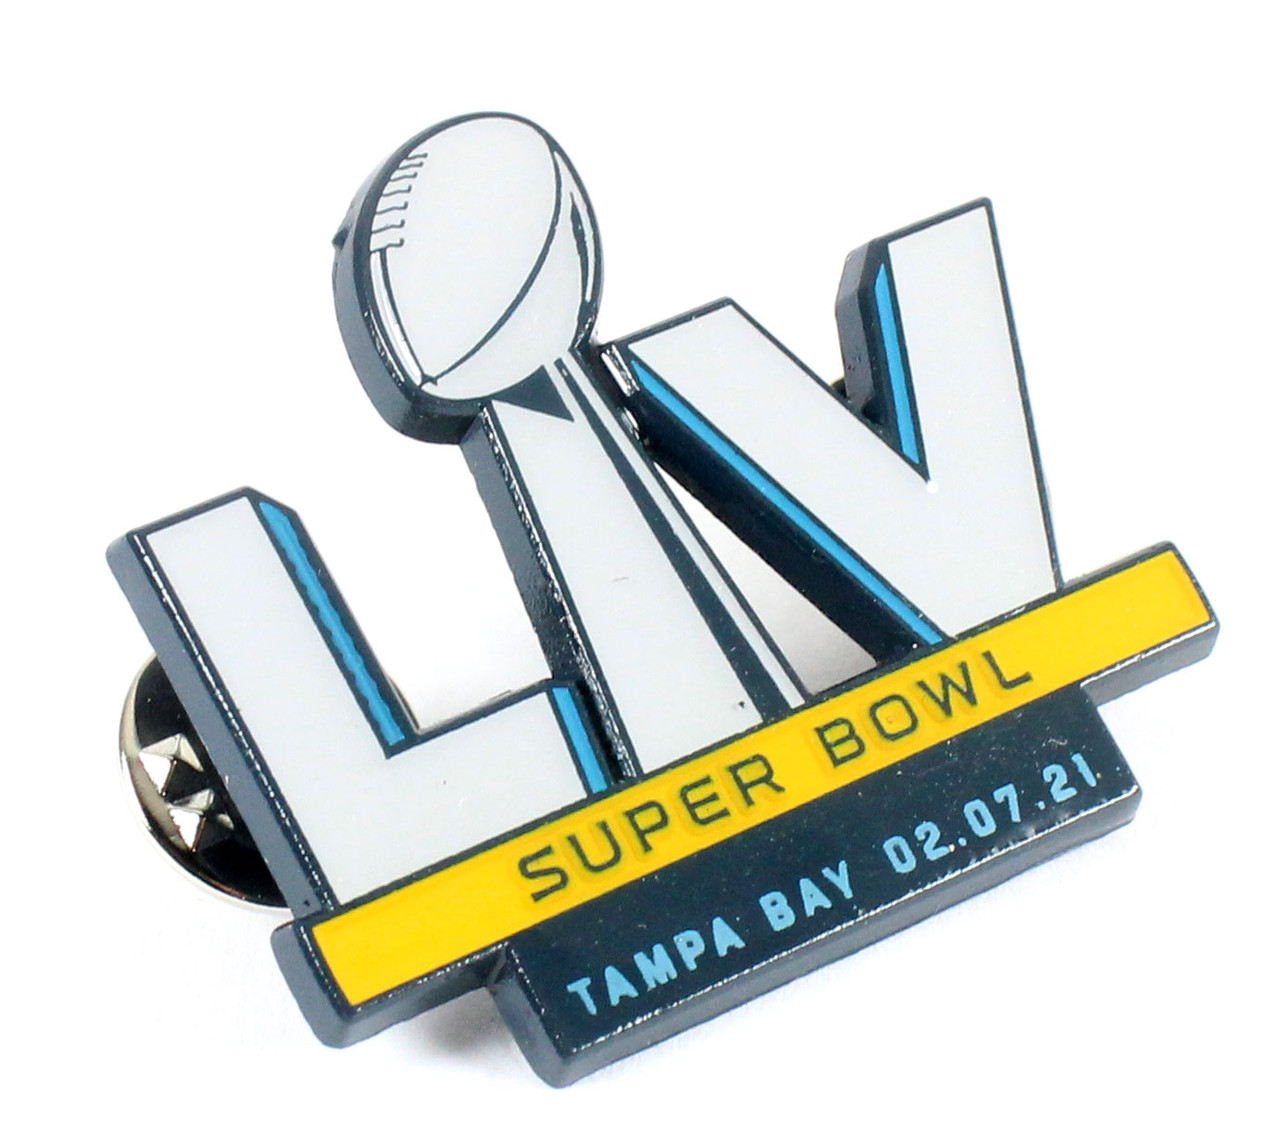 majorleaguepins.com Sports Pins & Collectibles - Super Bowl LV Wordmark Logo  pin